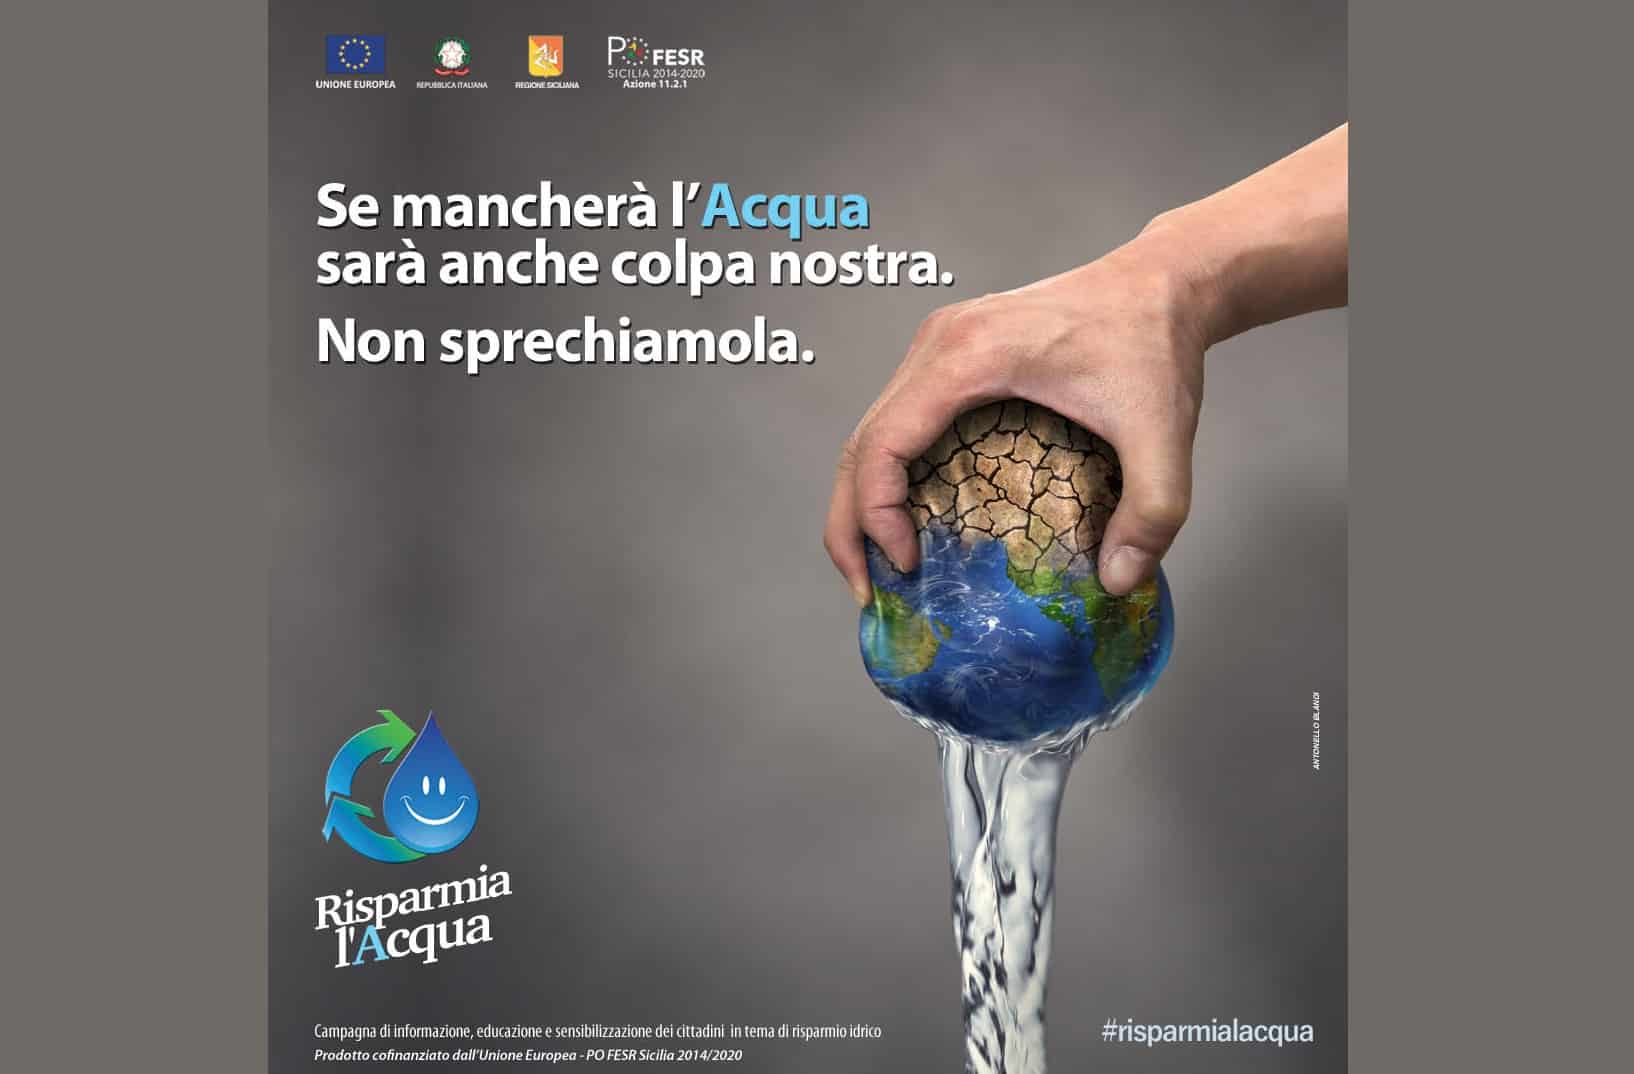 #RISPARMIALACQUA, al via la campagna di informazione e sensibilizzazione sull’uso consapevole dell’acqua